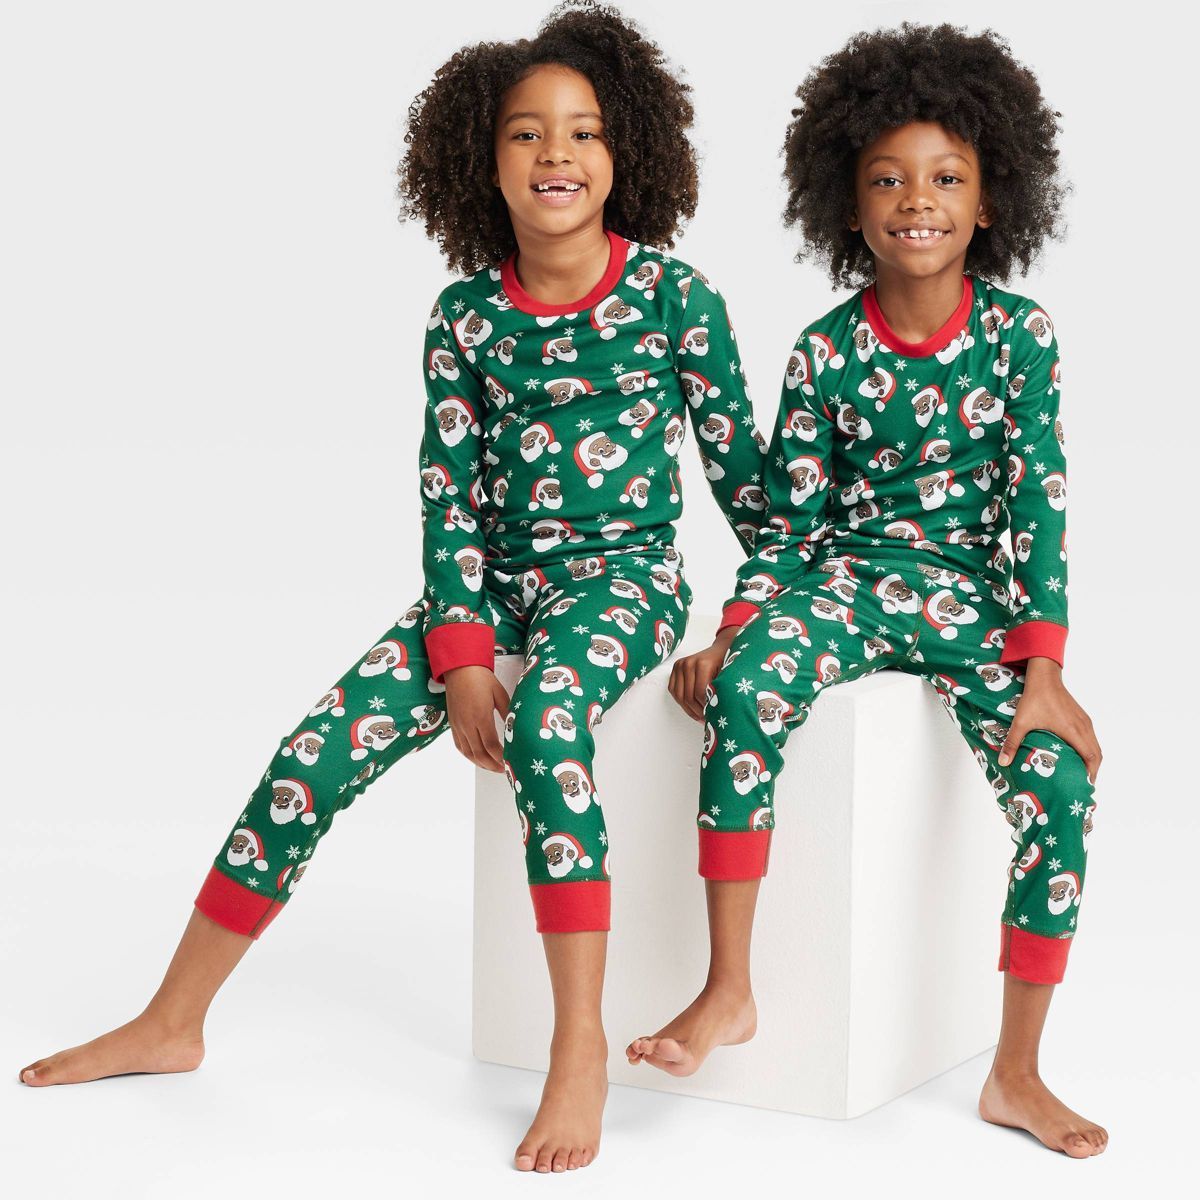 Greentop Gifts Kids' Santa Print Matching Family Pajama Set - Green | Target